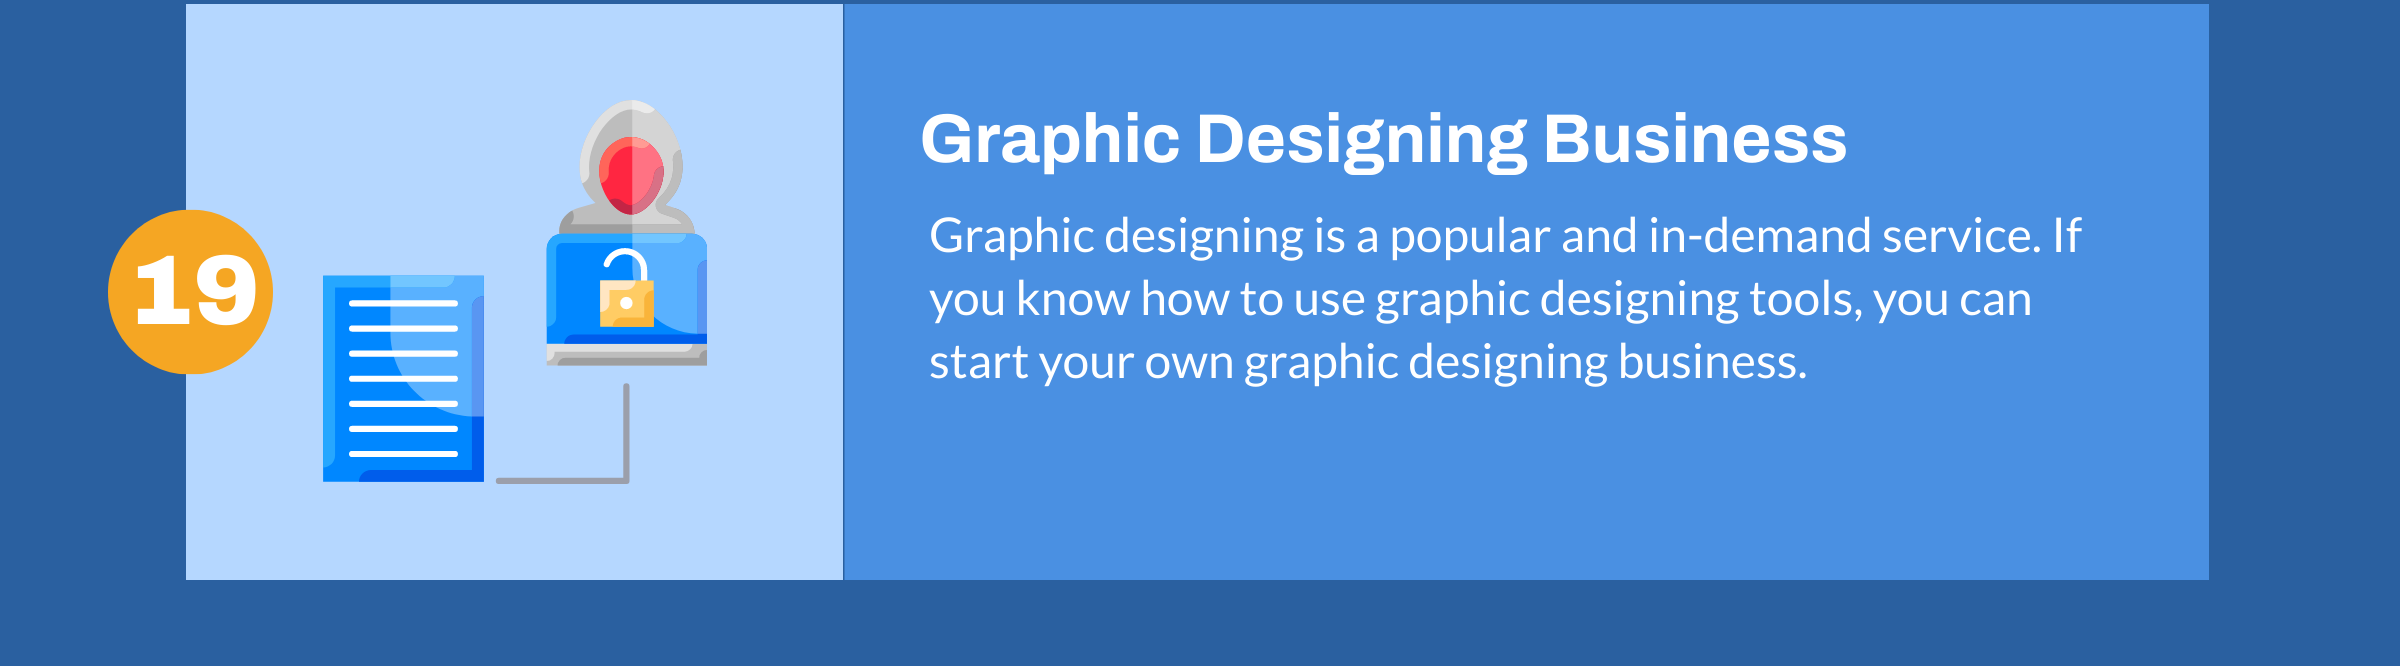 Grafikdesign-Geschäft